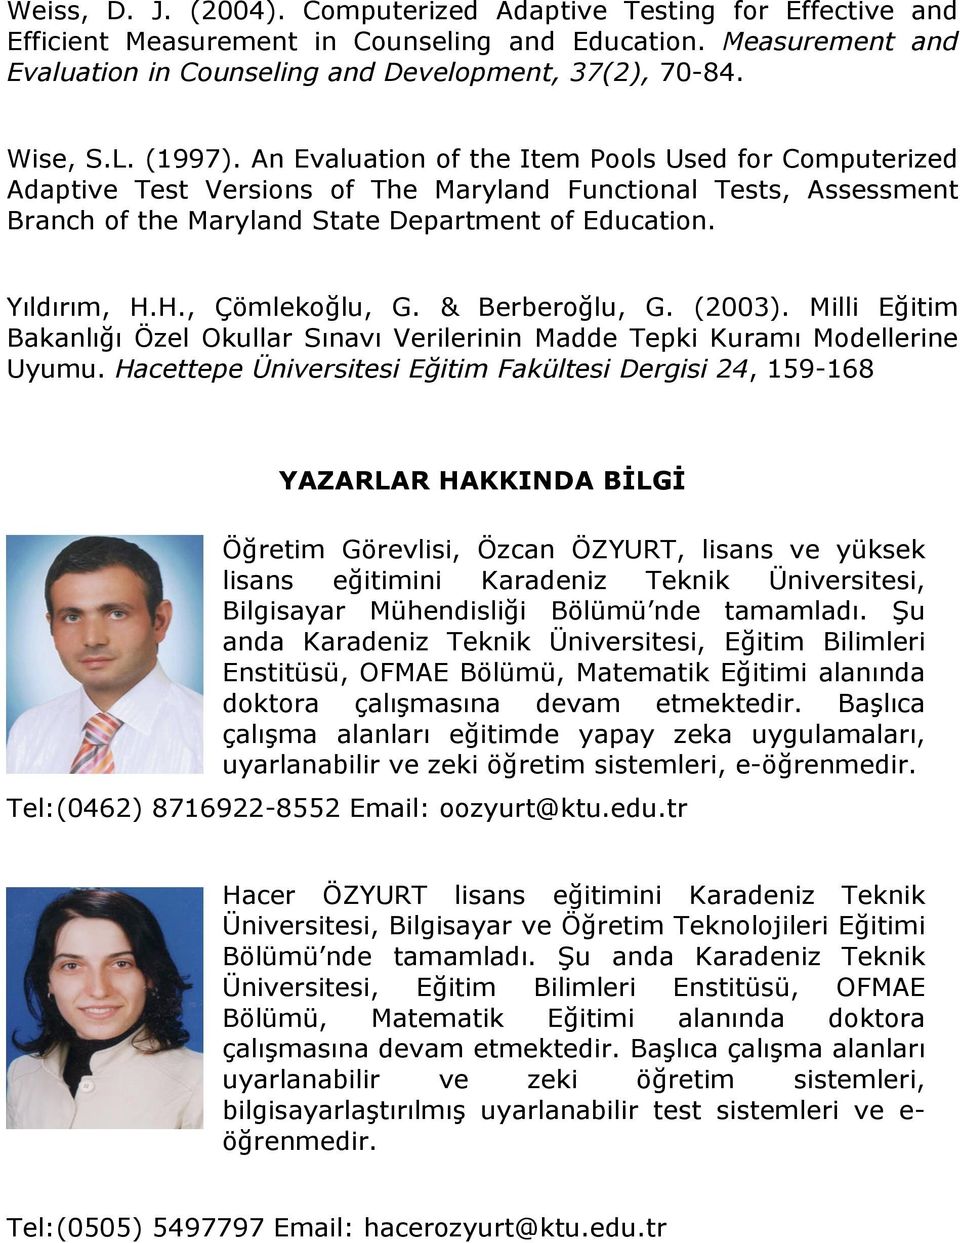 H., Çömlekoğlu, G. & Berberoğlu, G. (2003). Milli Eğitim Bakanlığı Özel Okullar Sınavı Verilerinin Madde Tepki Kuramı Modellerine Uyumu.